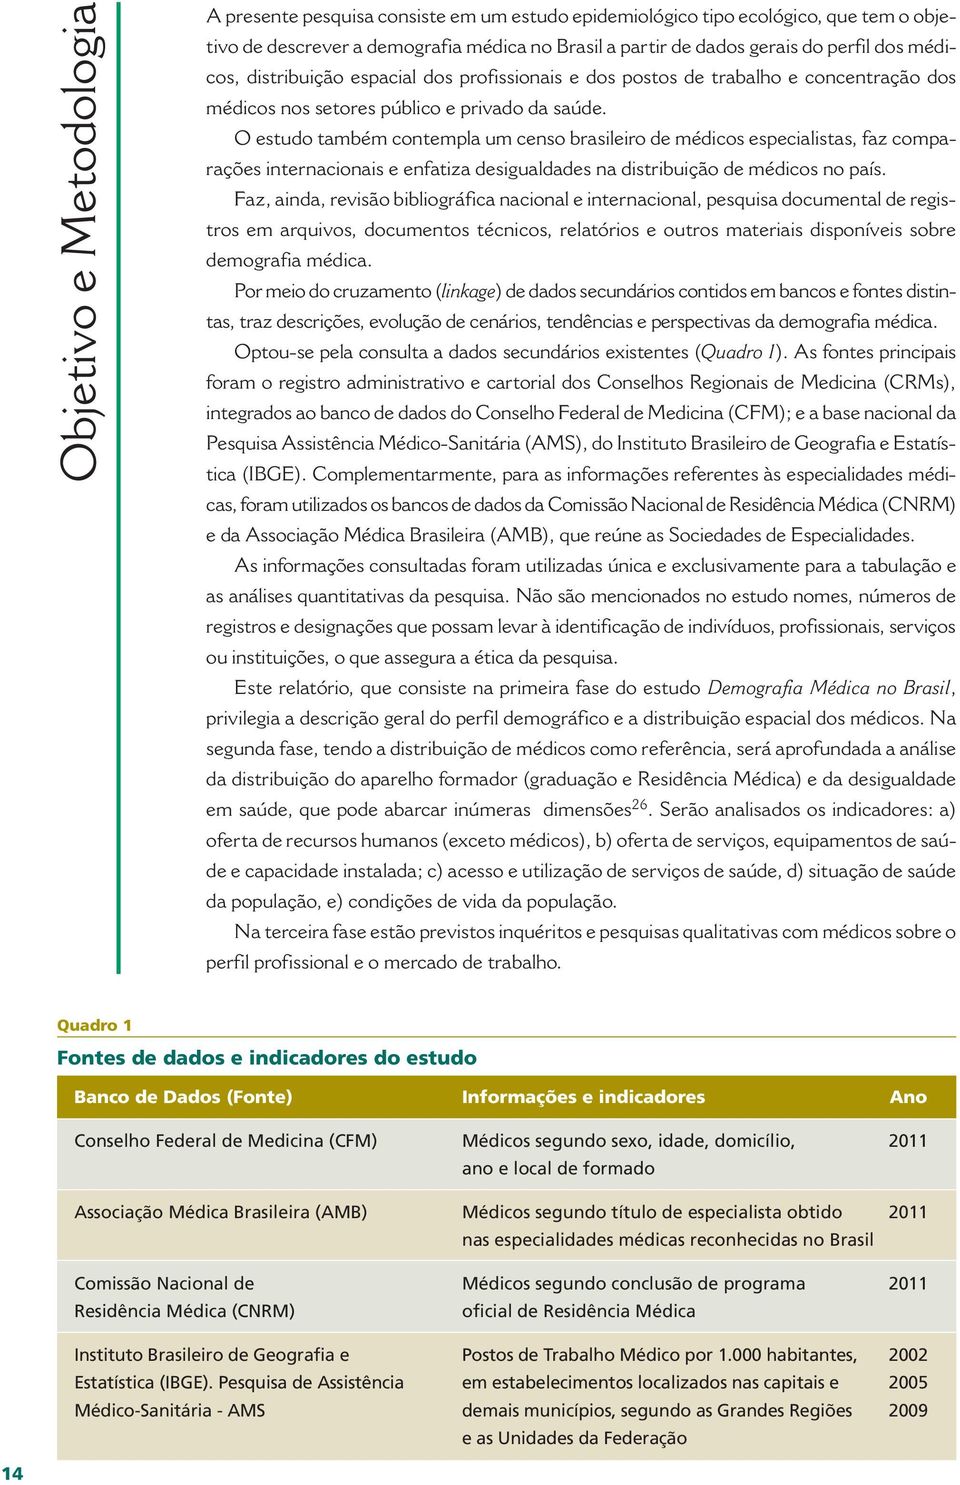 O estudo também contempla um censo brasileiro de médicos especialistas, faz comparações internacionais e enfatiza desigualdades na distribuição de médicos no país.